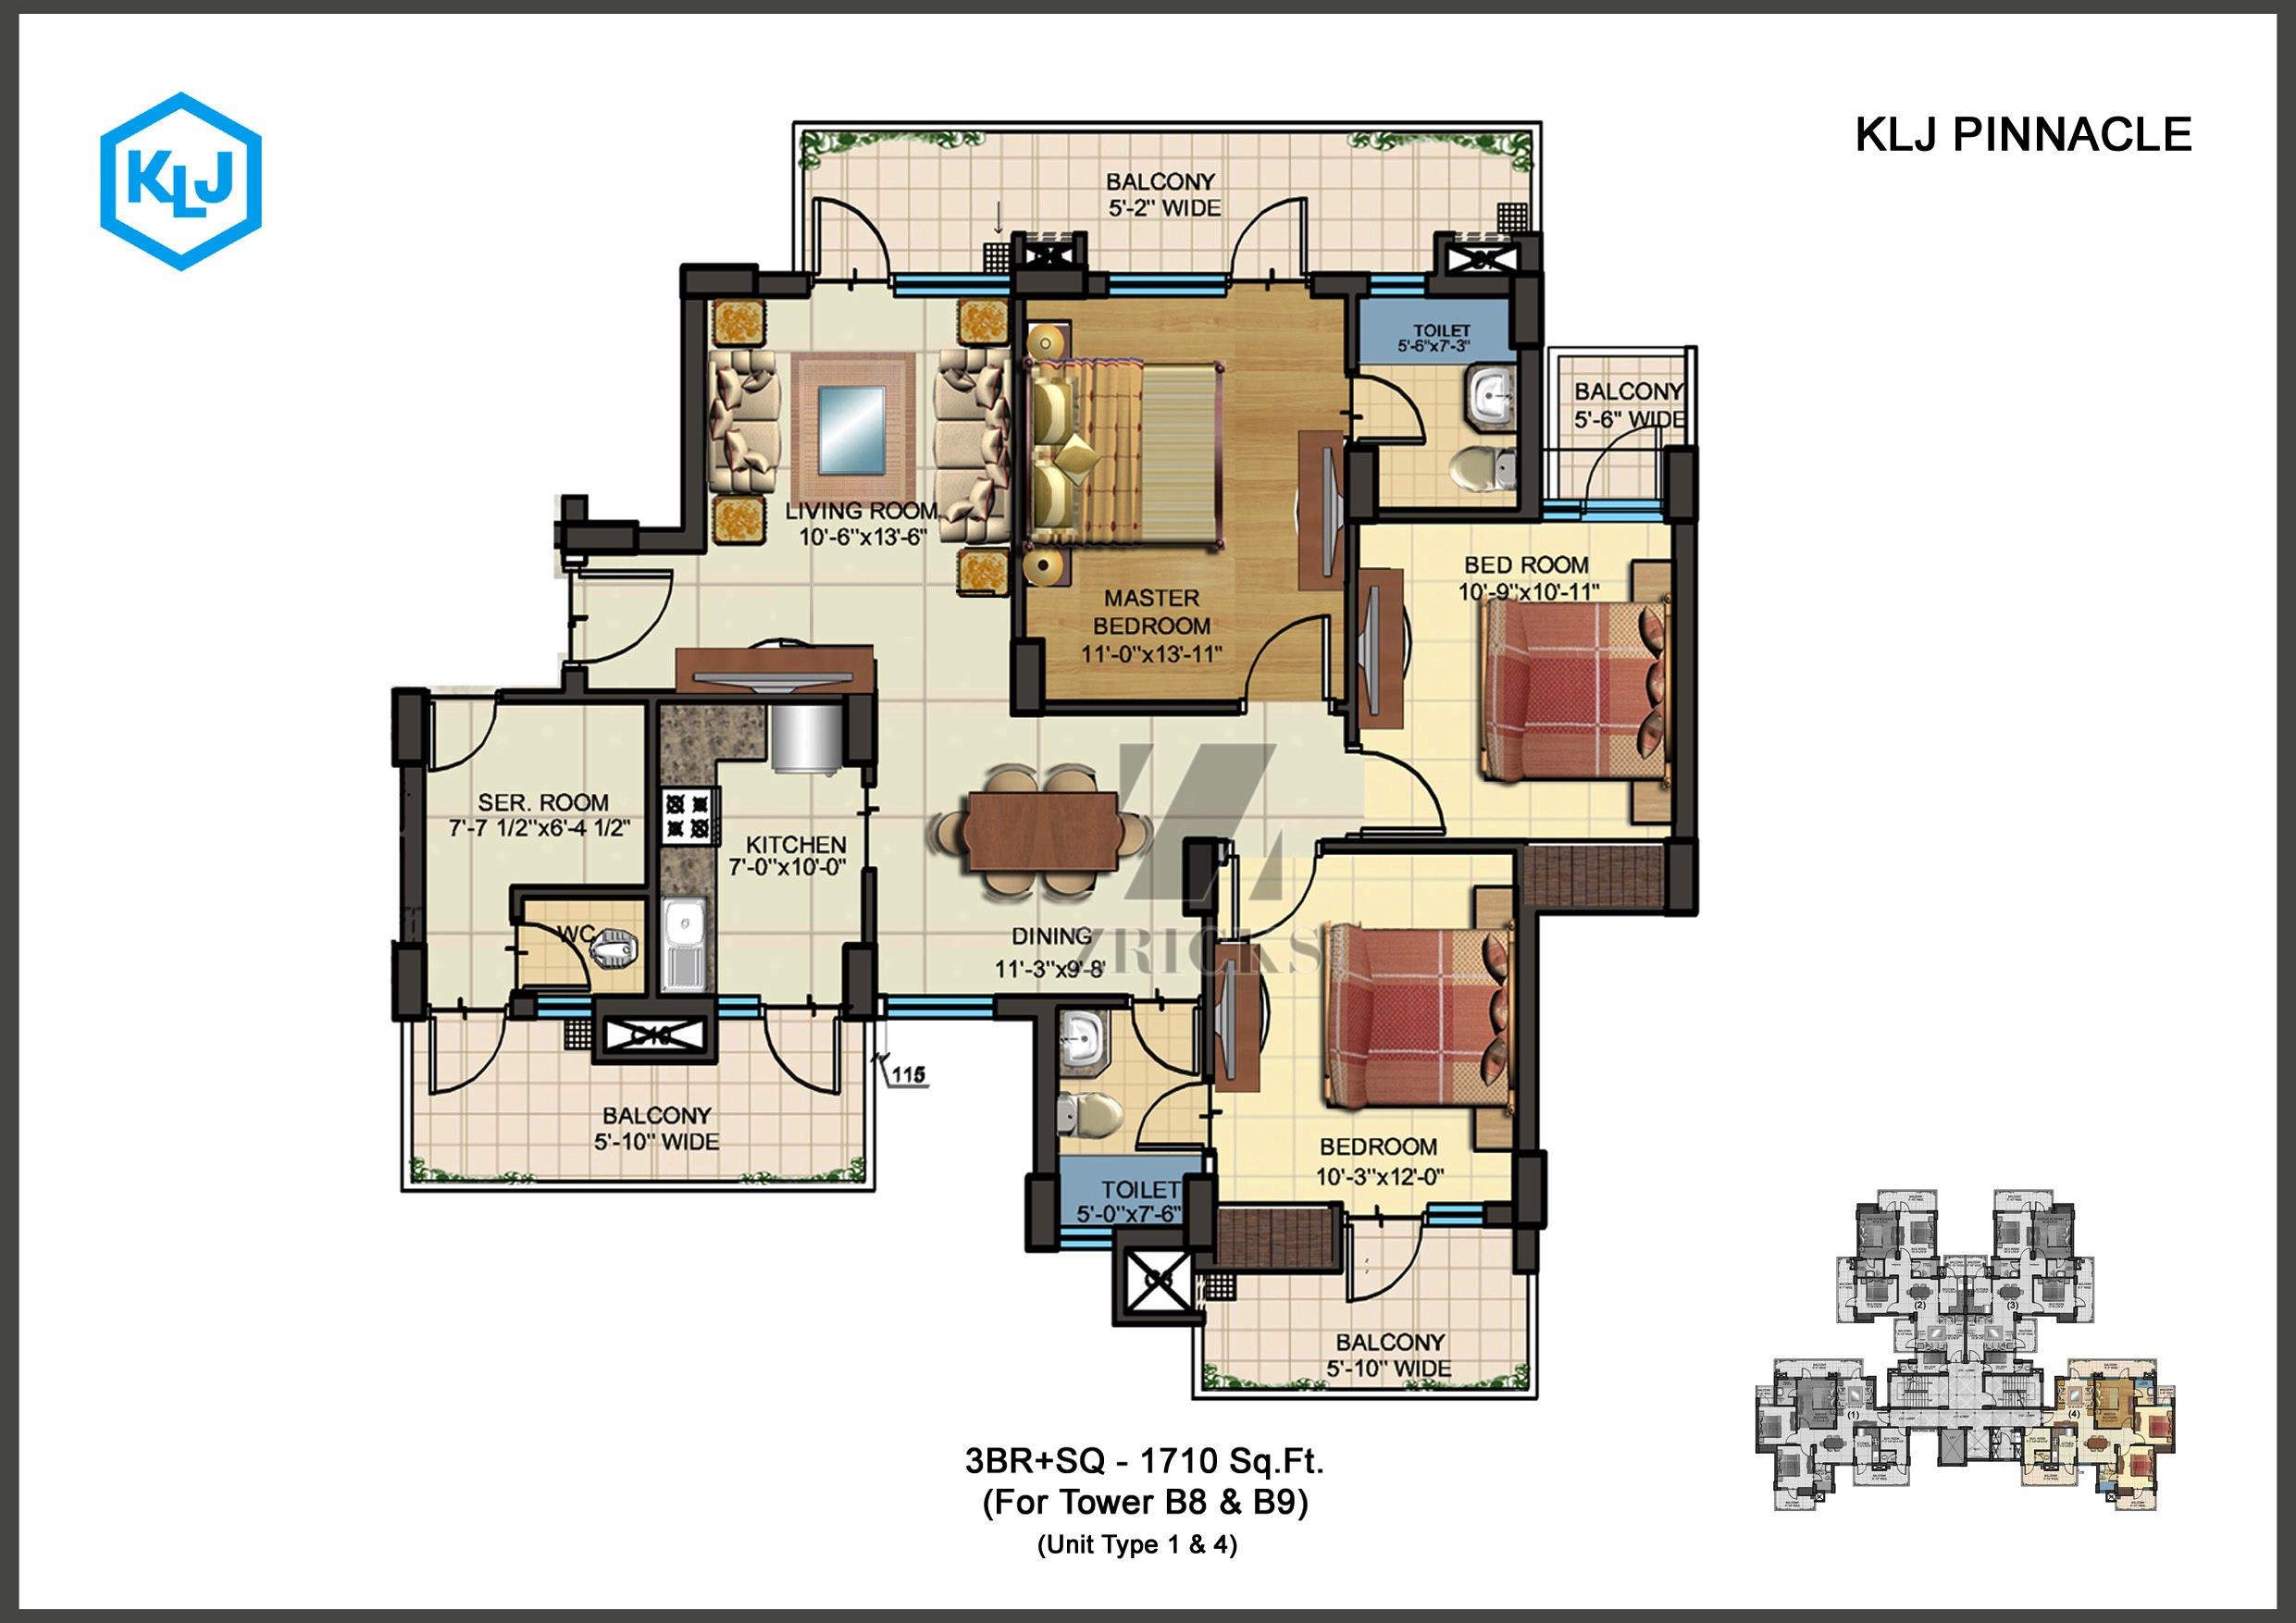 KLJ Pinnacle Floor Plan